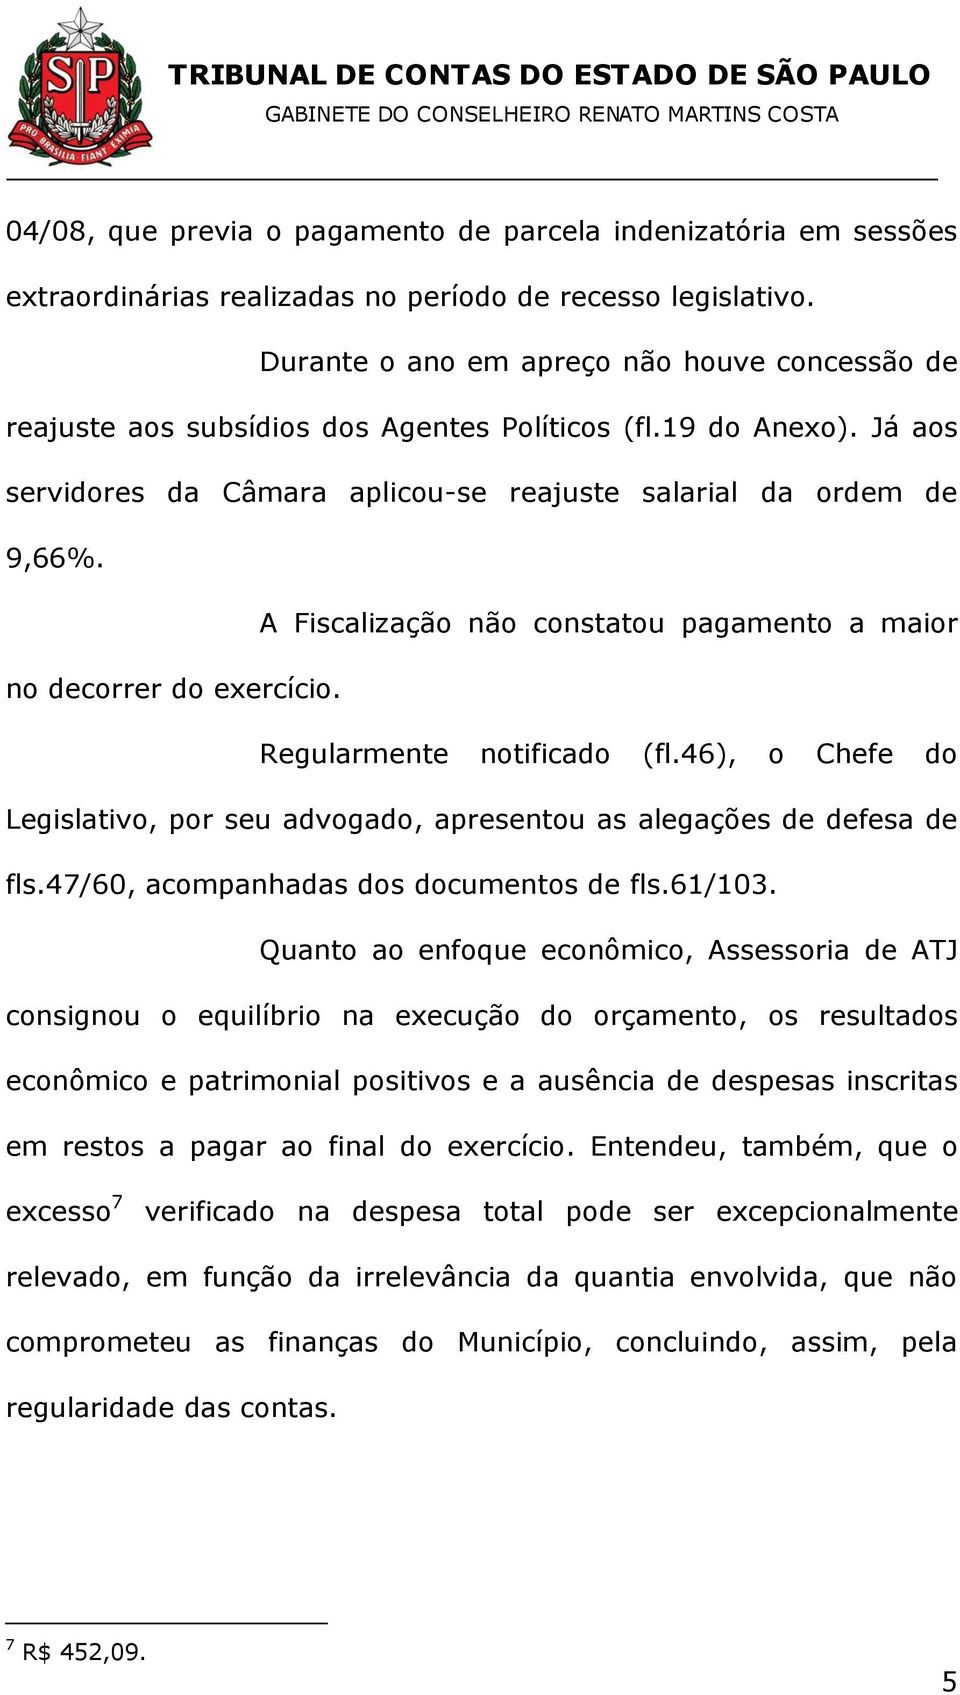 A Fiscalização não constatou pagamento a maior no decorrer do exercício. Regularmente notificado (fl.46), o Chefe do Legislativo, por seu advogado, apresentou as alegações de defesa de fls.